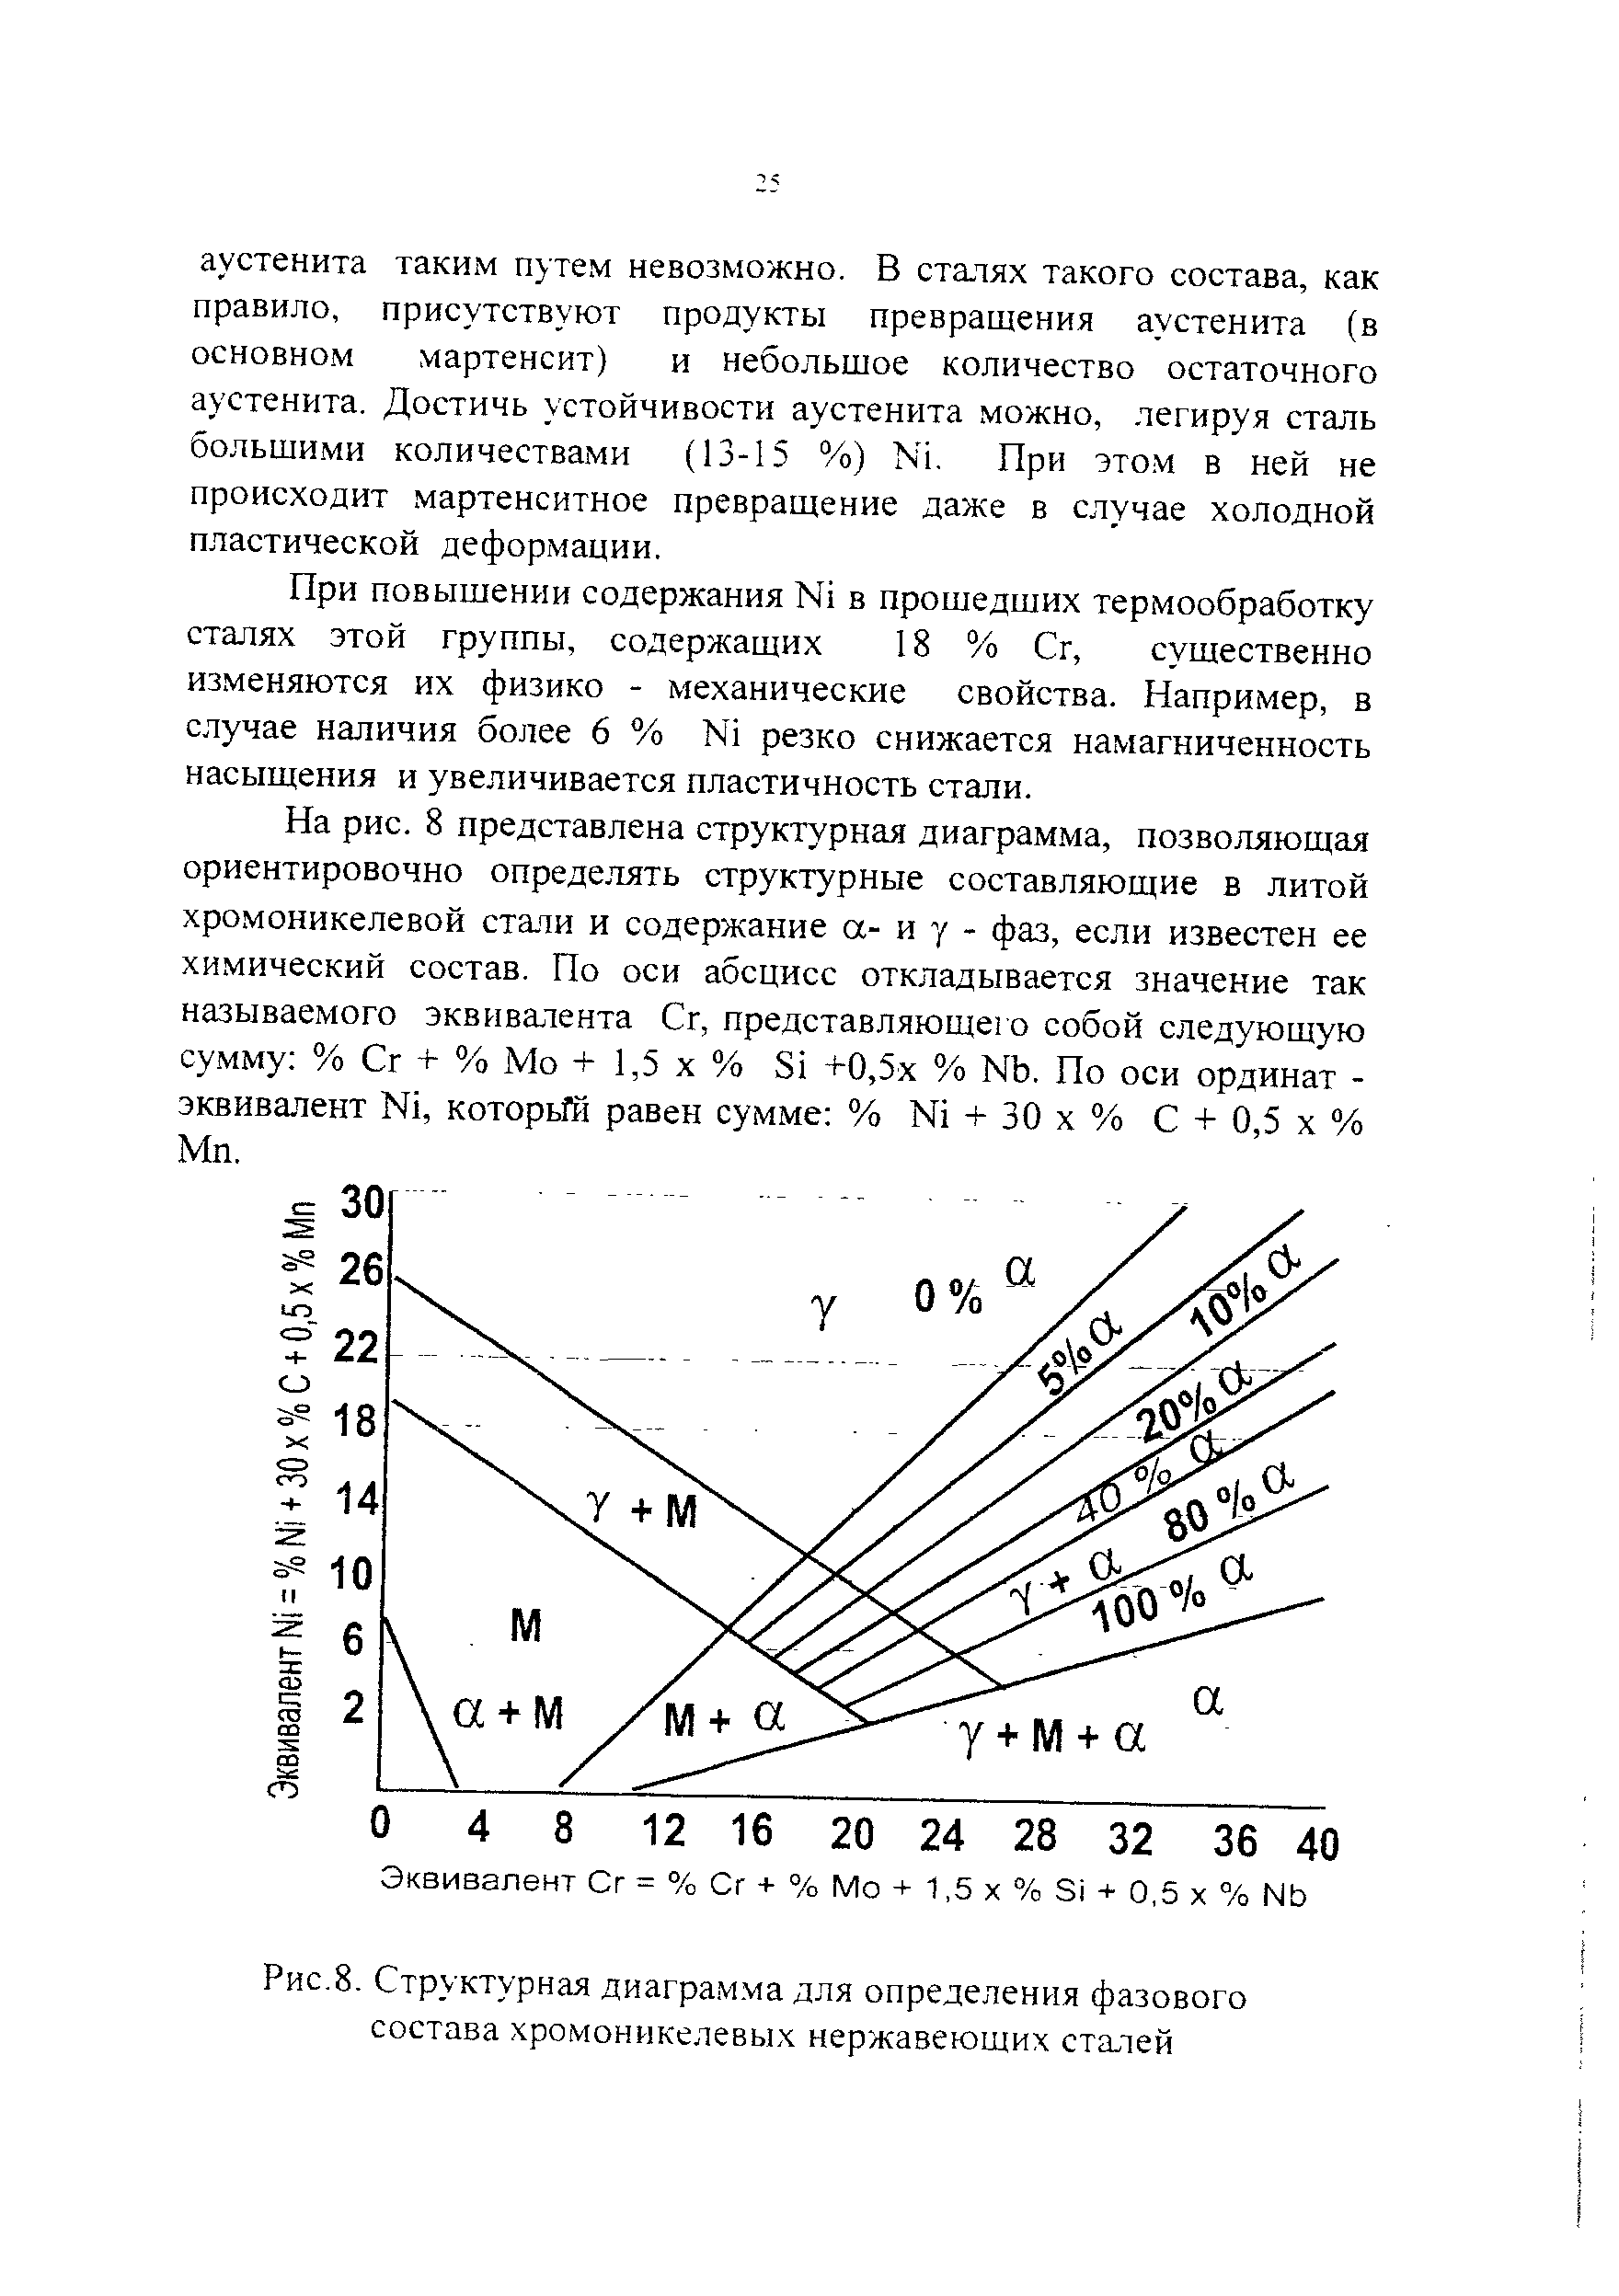 Рис.8. Структурная диагра.м.ма для определения фазового состава хромоникелевых нержавеющих сталей
